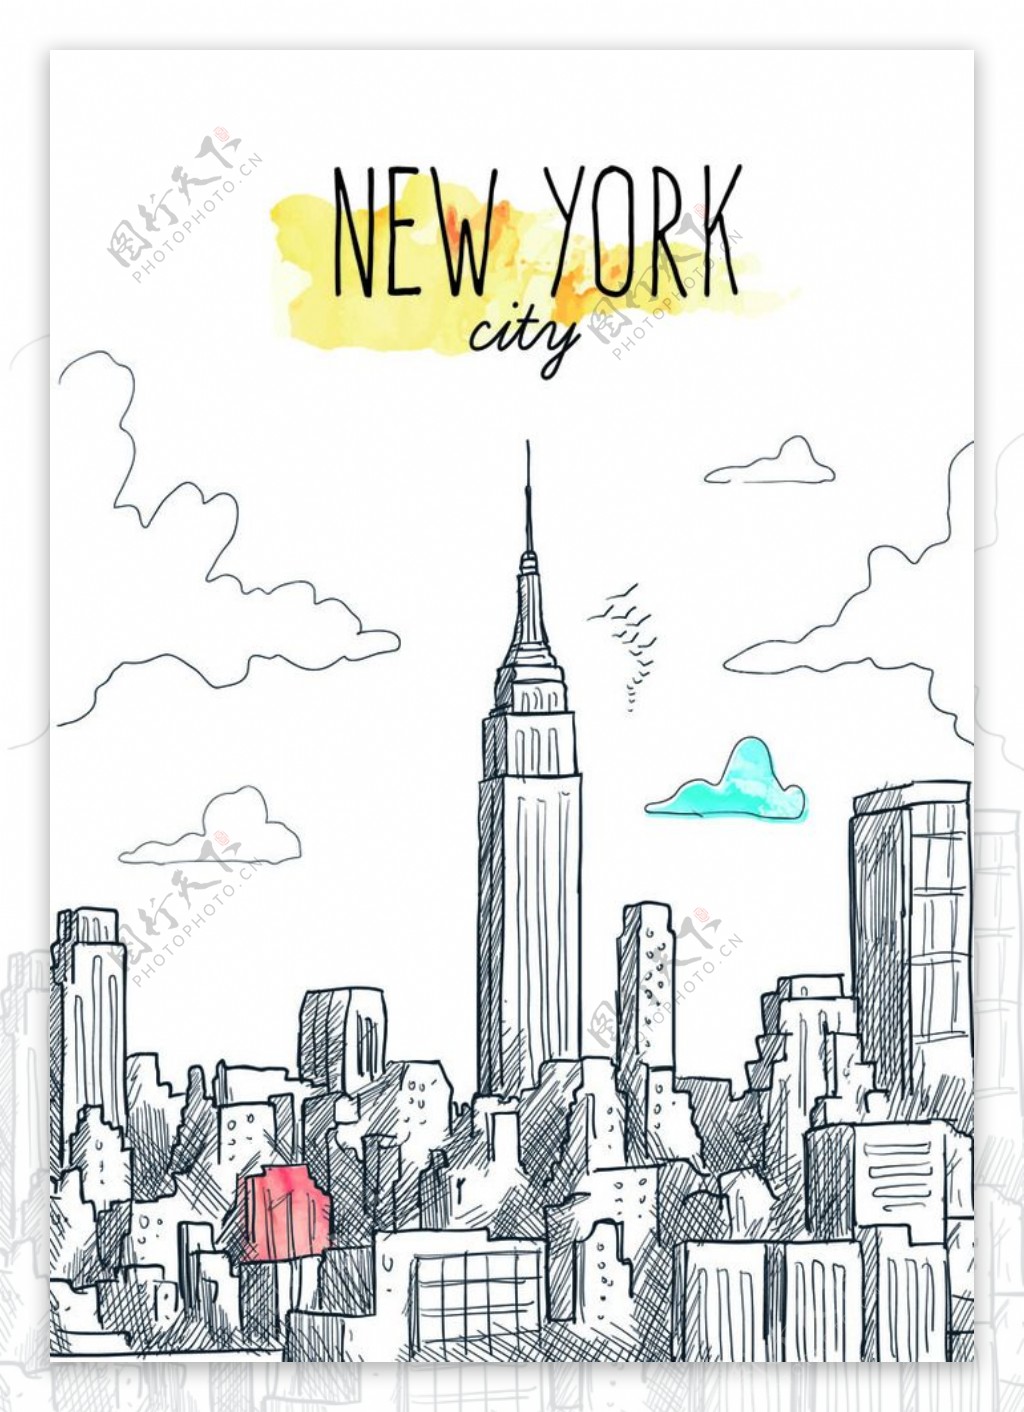 创意手绘纽约城市建筑群